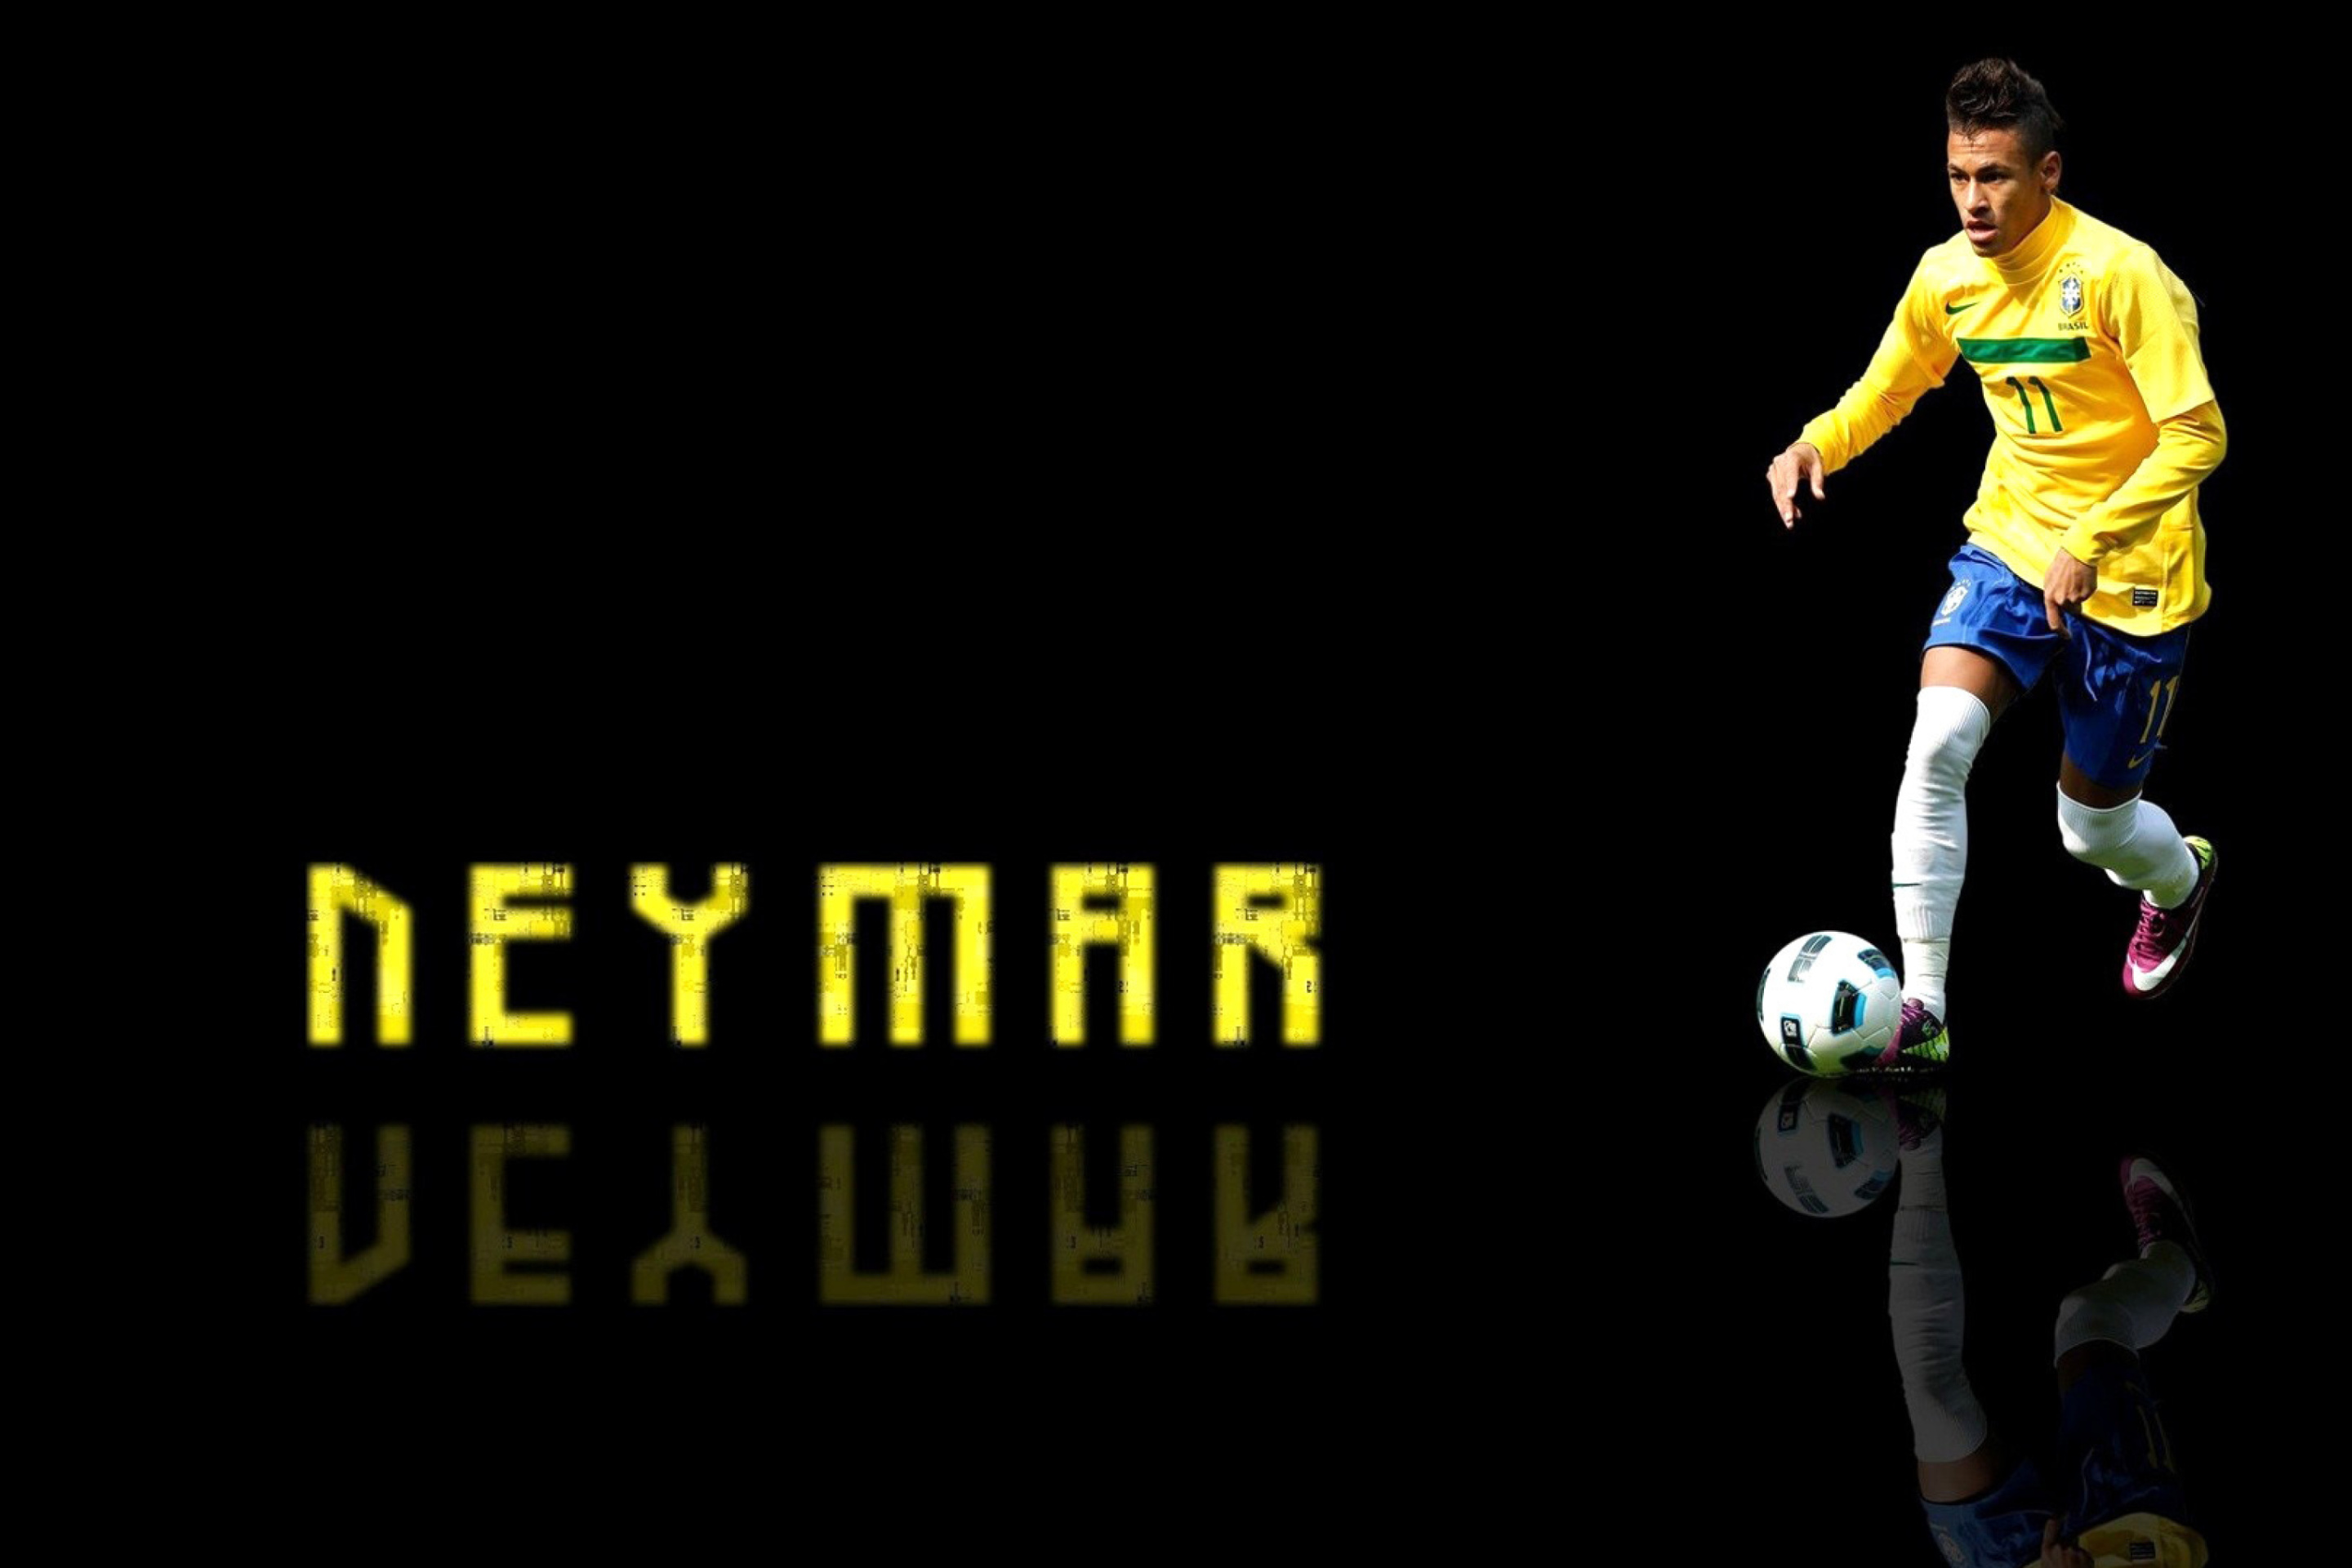 Das Neymar Brazilian Professional Footballer Wallpaper 2880x1920